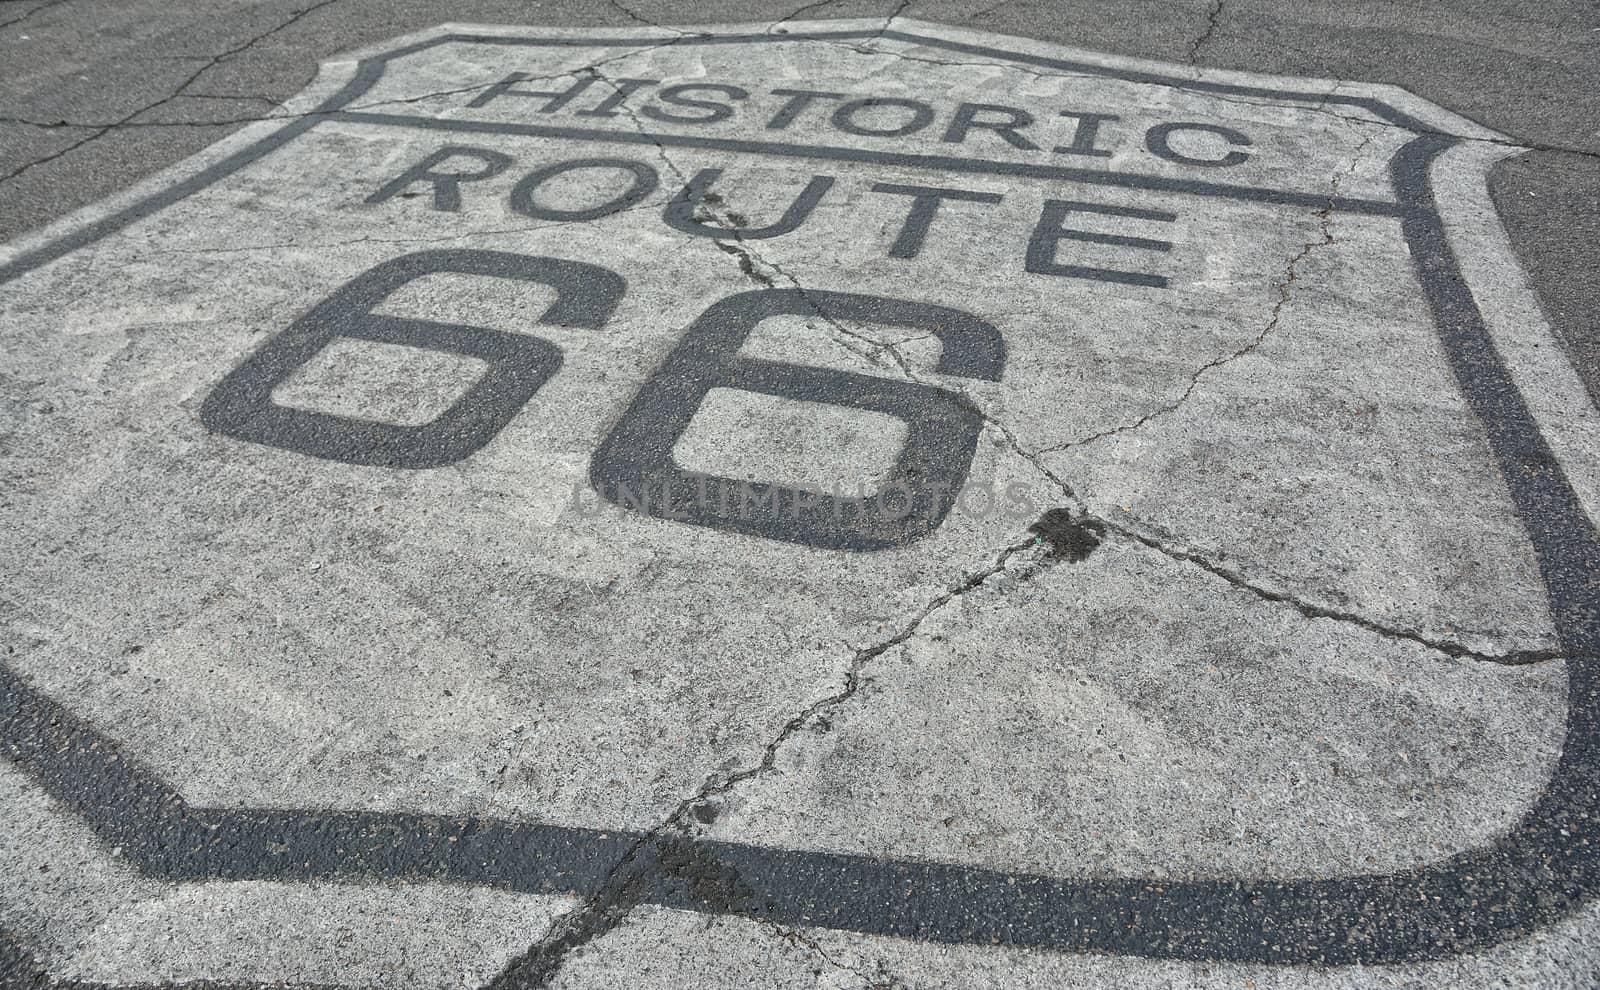 Historic route 66 on the asphalt by CreativePhotoSpain